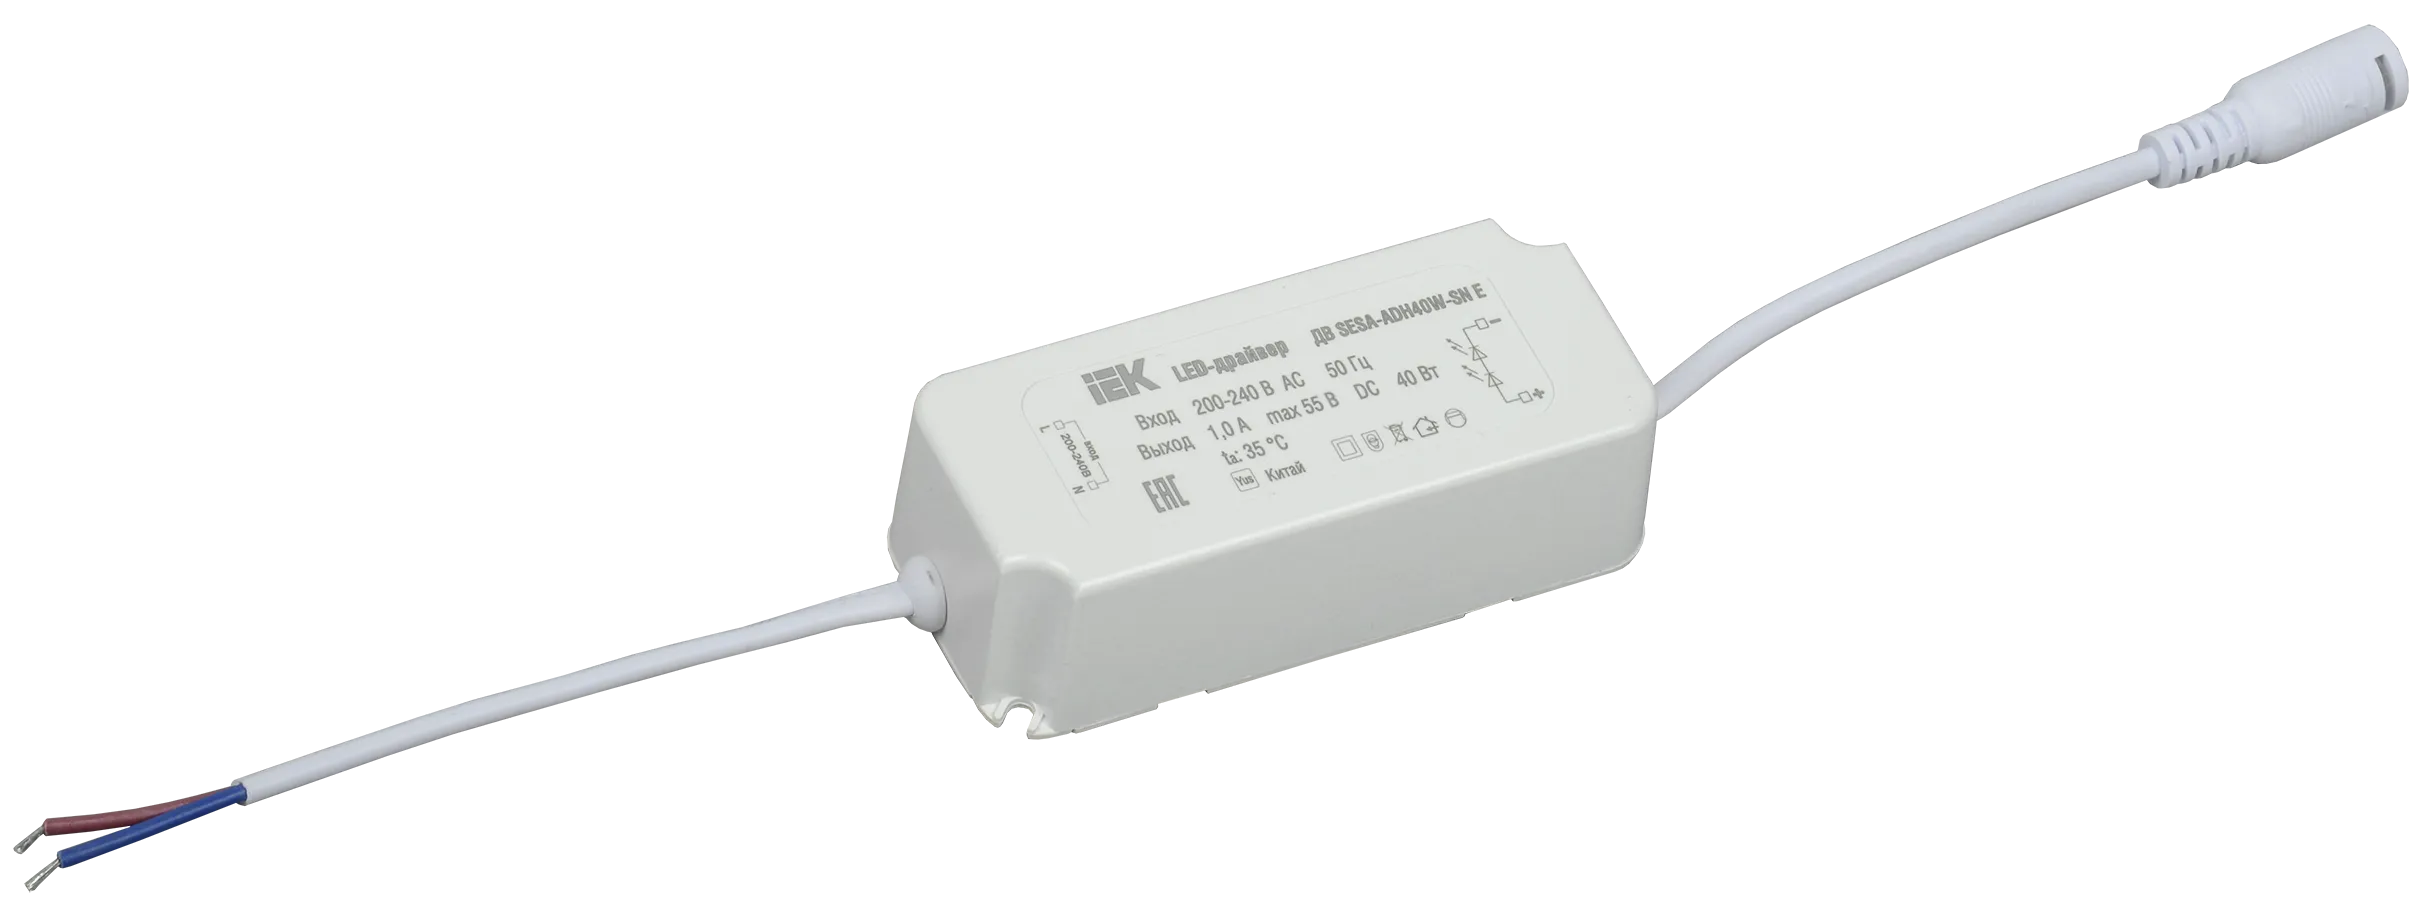 LED-драйвер тип ДВ SESA-ADH40W-SN Е, для LED светильников 40Вт IEK